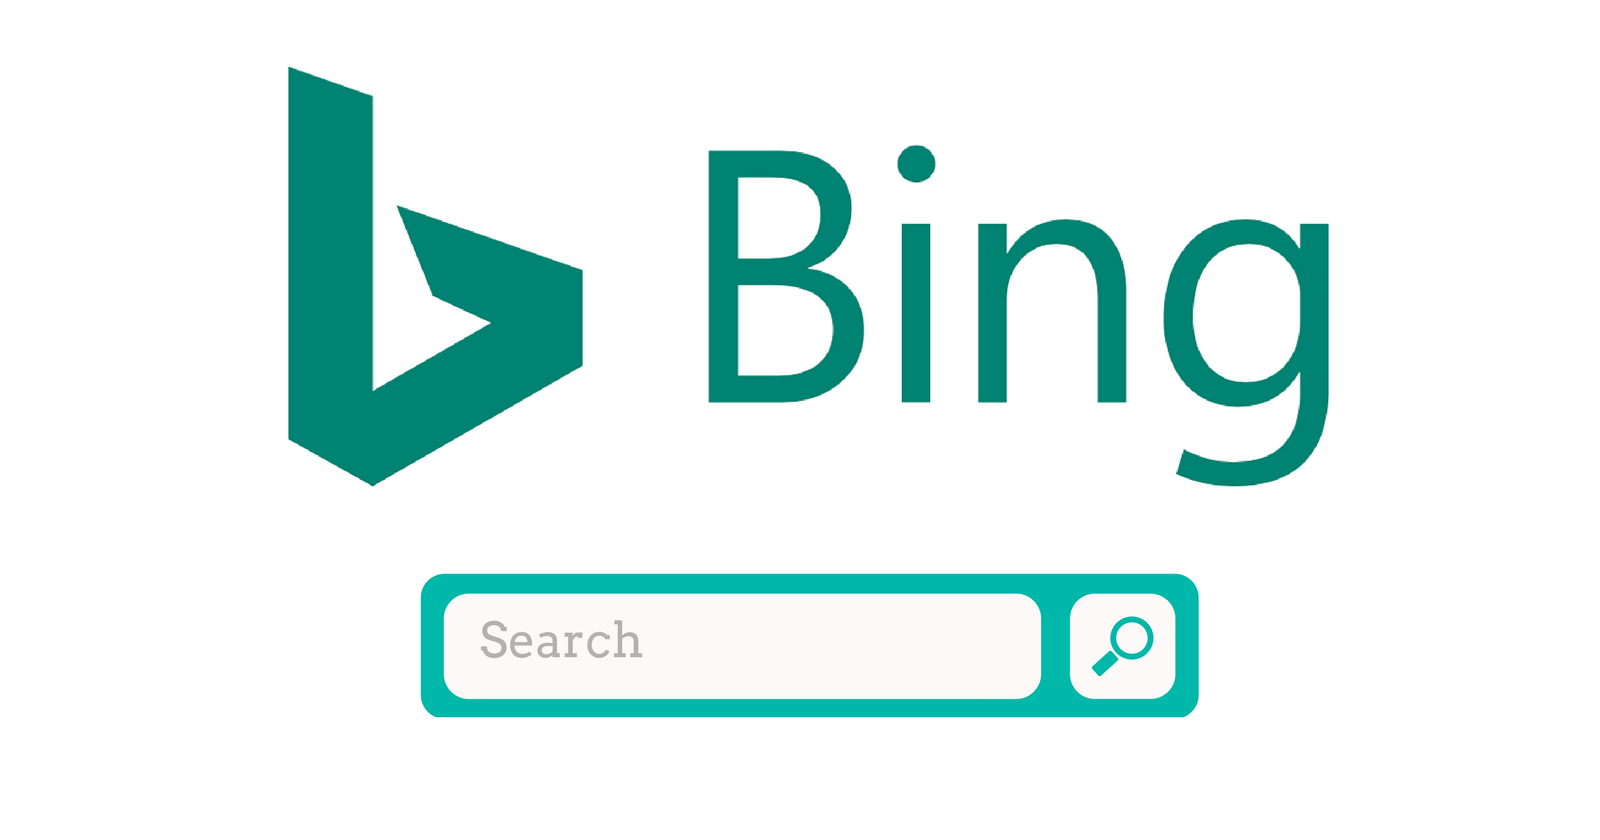 new bing logo.png